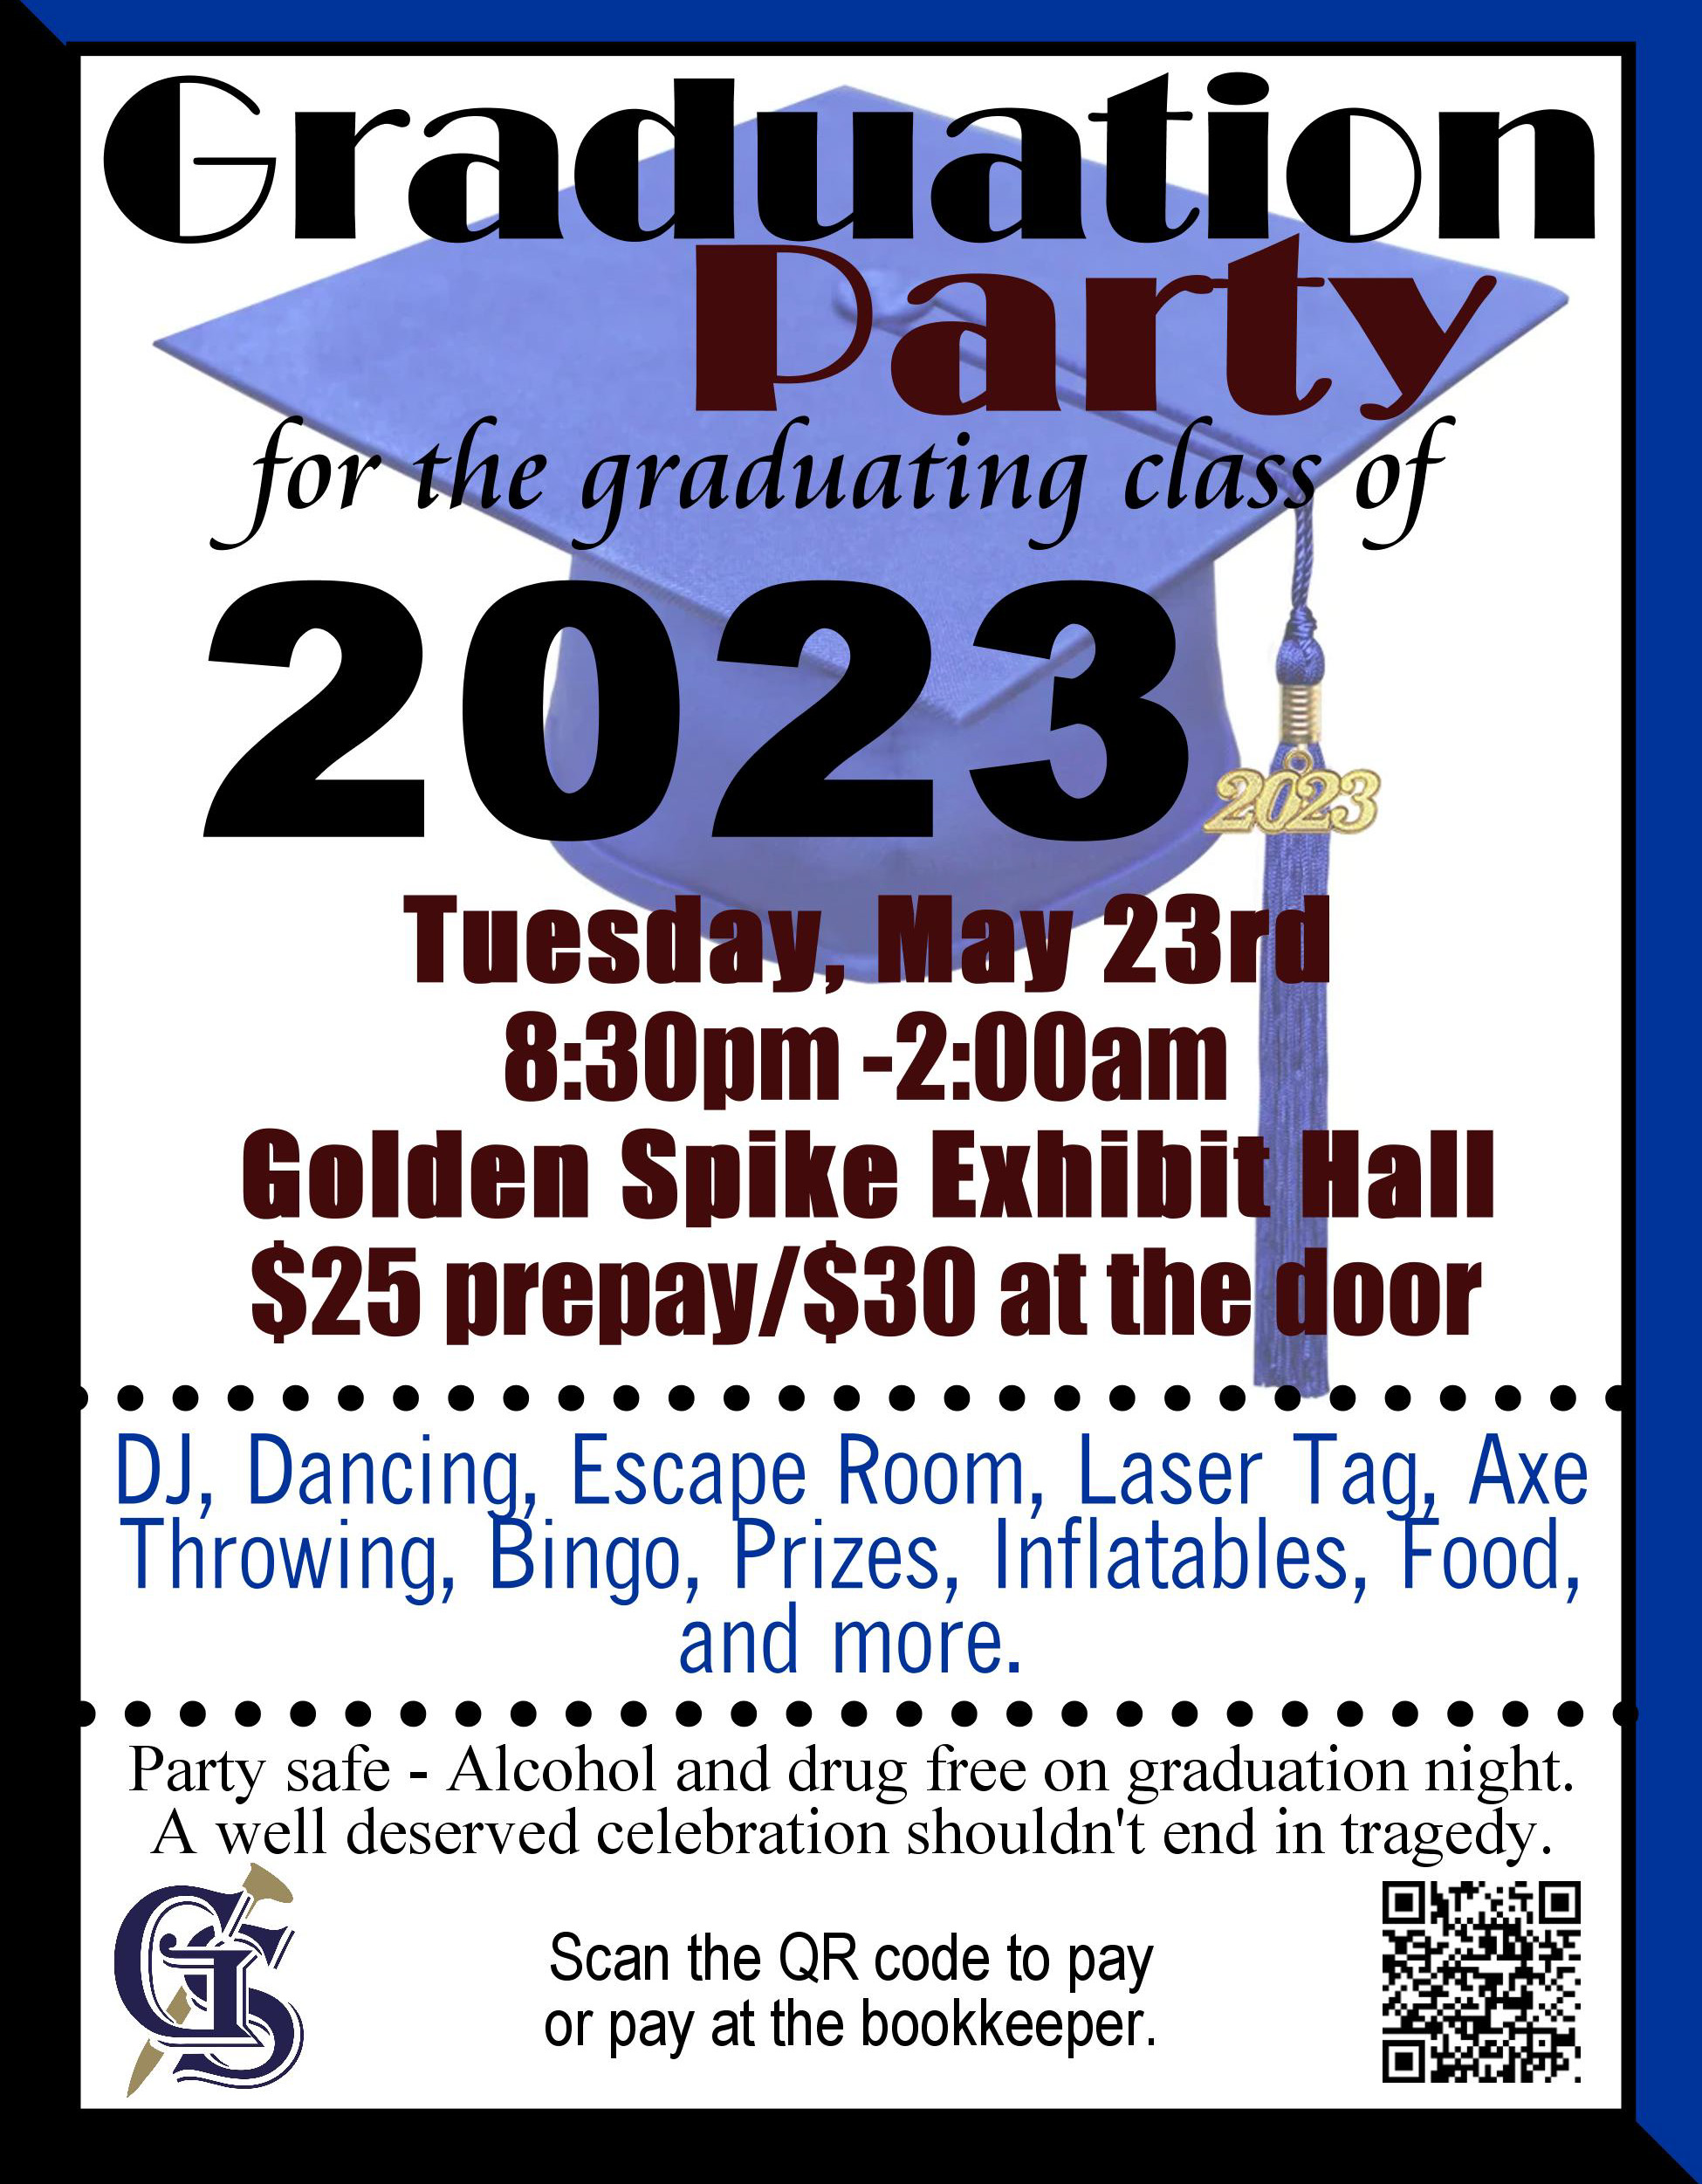 Grad Party flyer 2023